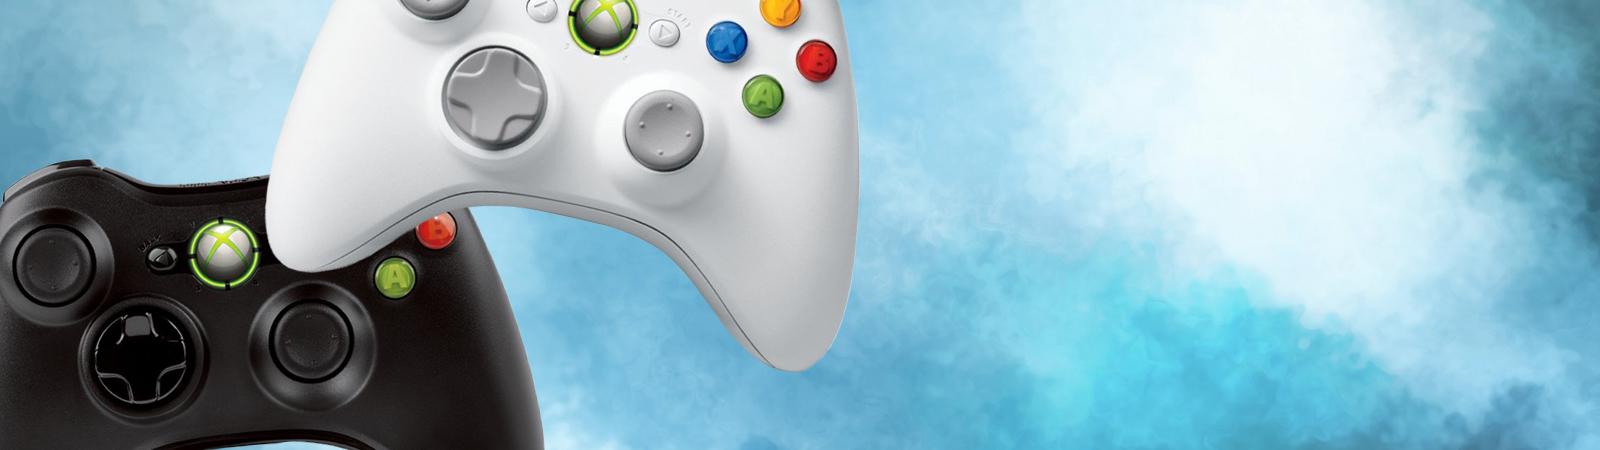 Snoep Decoderen Grace Xbox 360 consoles, Xbox 360 games & accessoires kopen bij GooHoo!